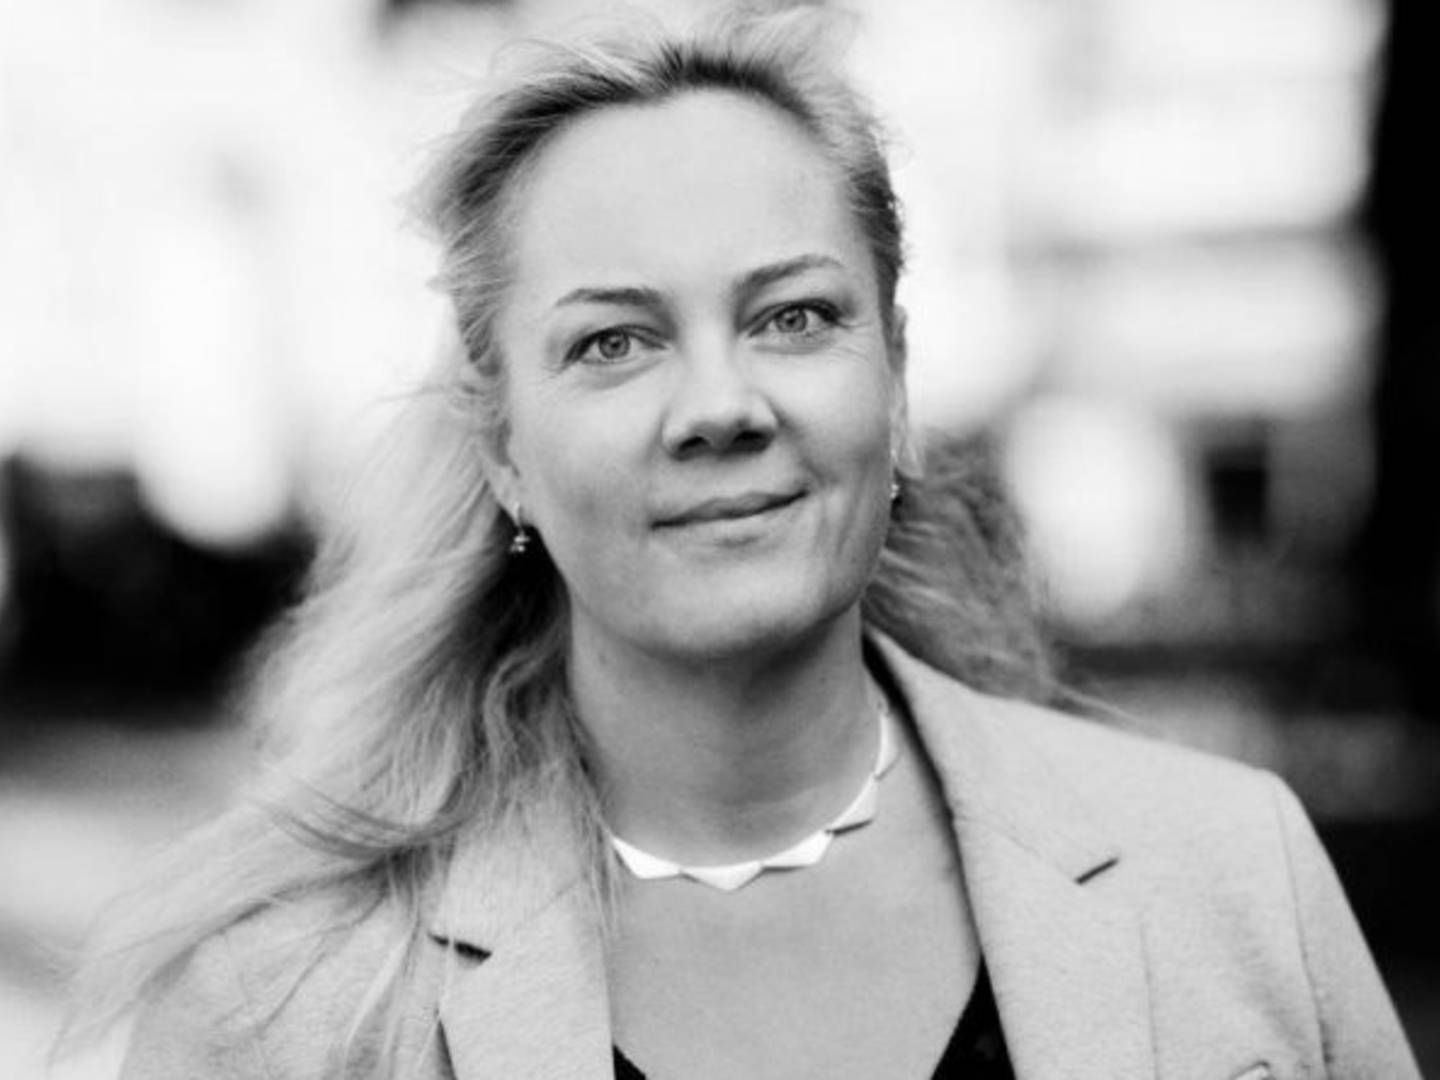 Konstitueret direktør for Danske Medier, Marianne Zederkof, ser risiko for, at nyt lovforslag kan begrænse pressefriheden | Foto: PR/Danske Medier